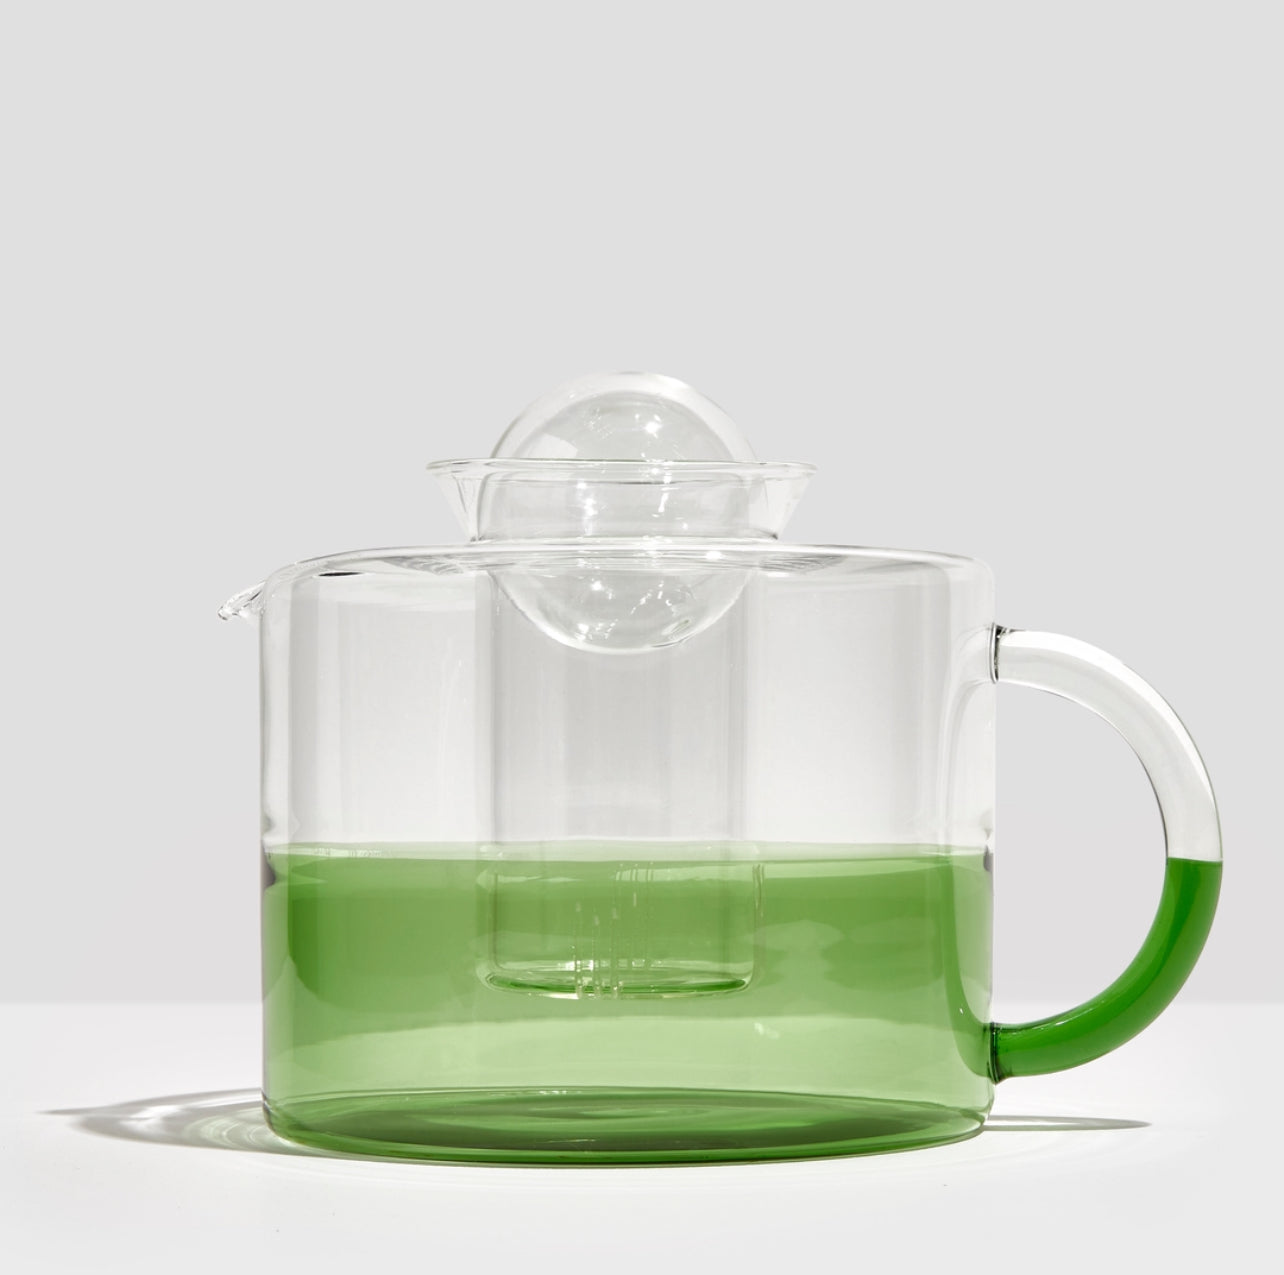 קנקן תה שני גוונים שקוף + ירוק